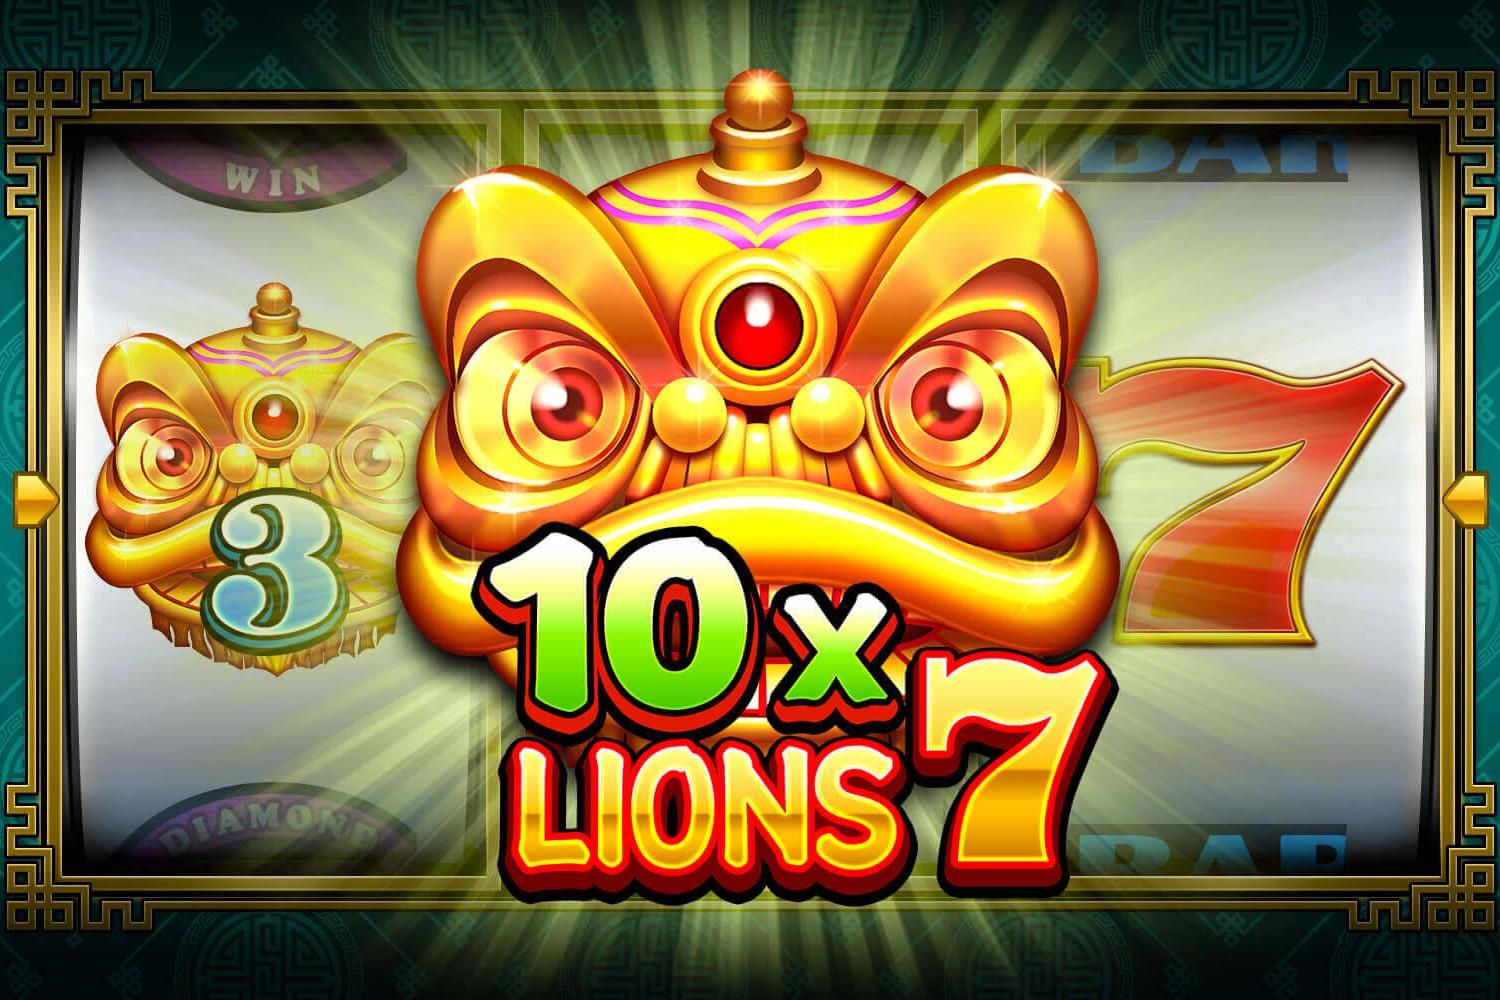 Slot 10x Lions 7